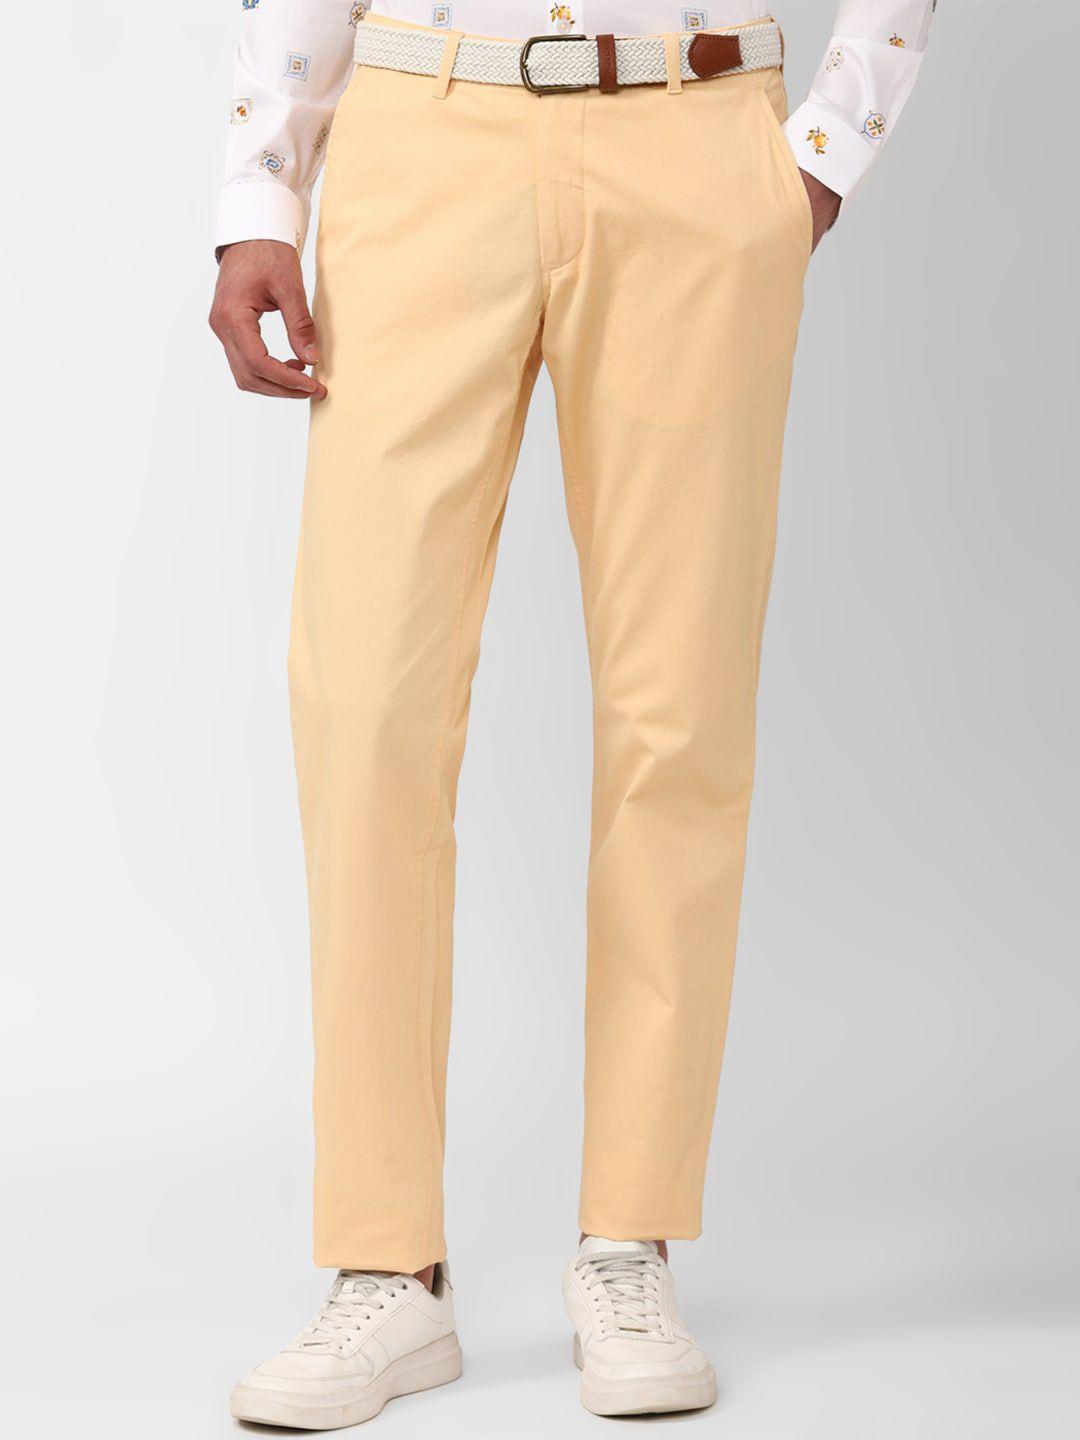 simon-carter-london-men-mid-rise-slim-fit-plain-pure-cotton-trousers